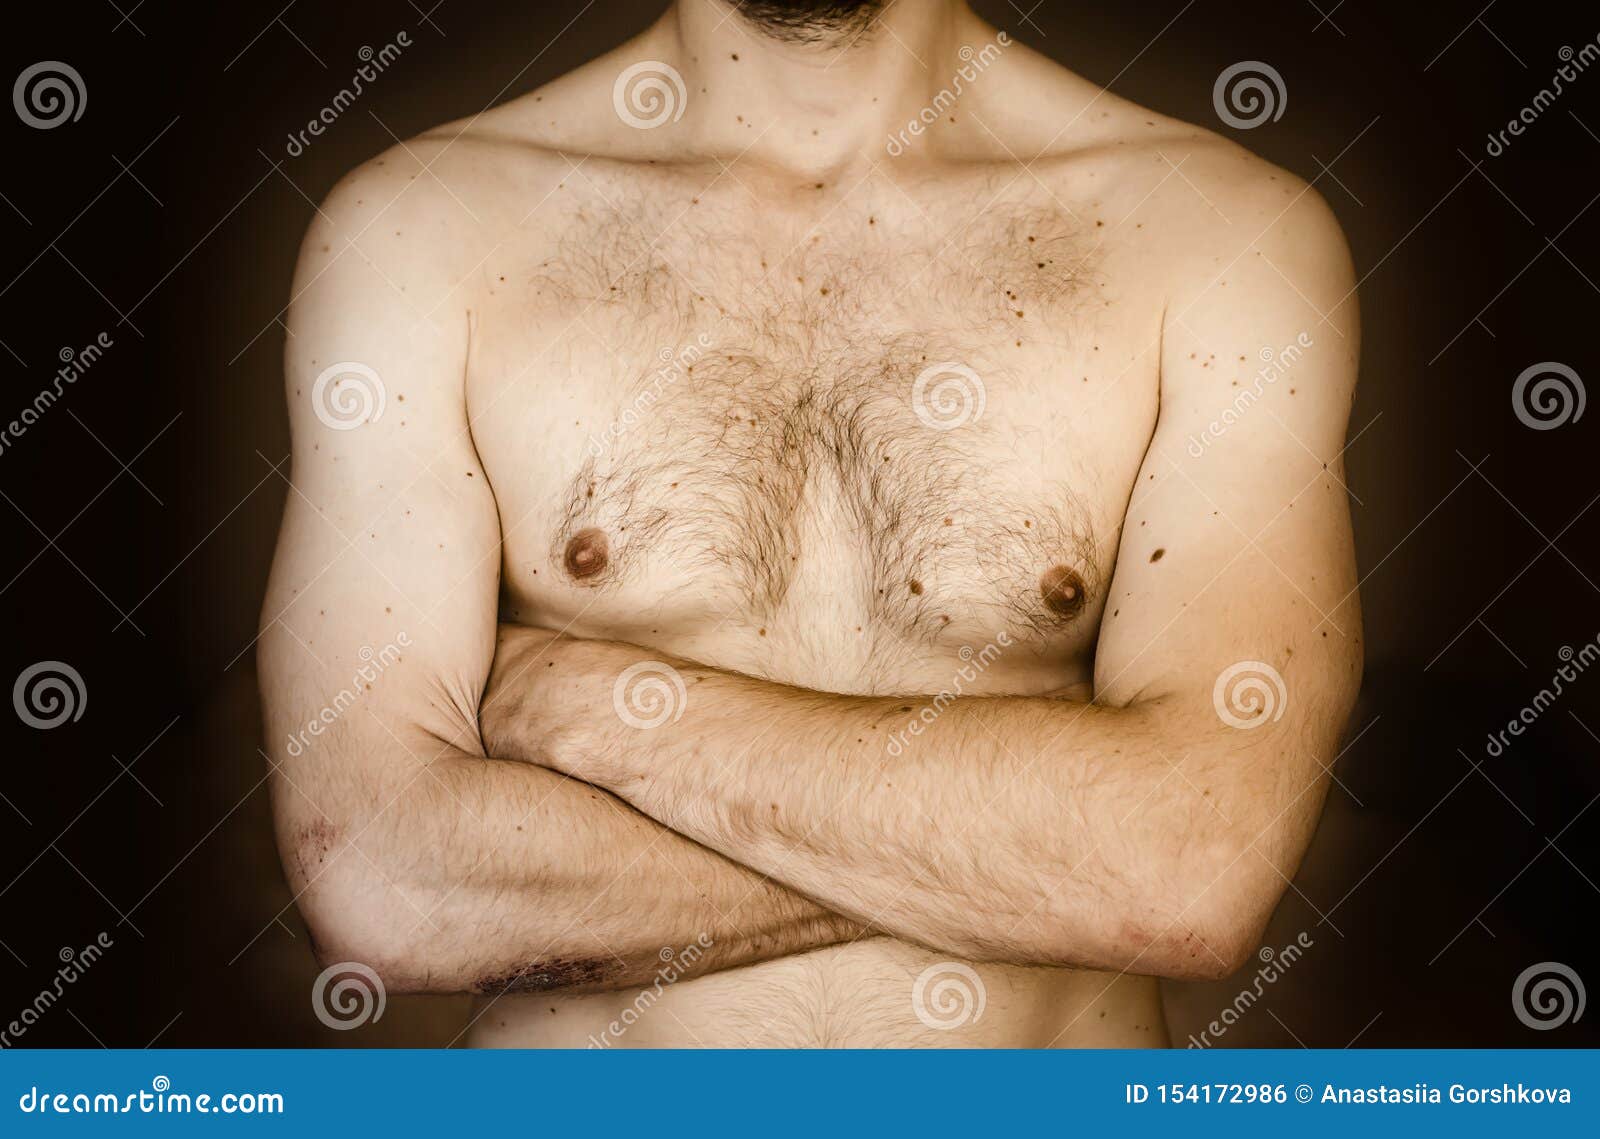 пятнышко на груди у мужчин (120) фото